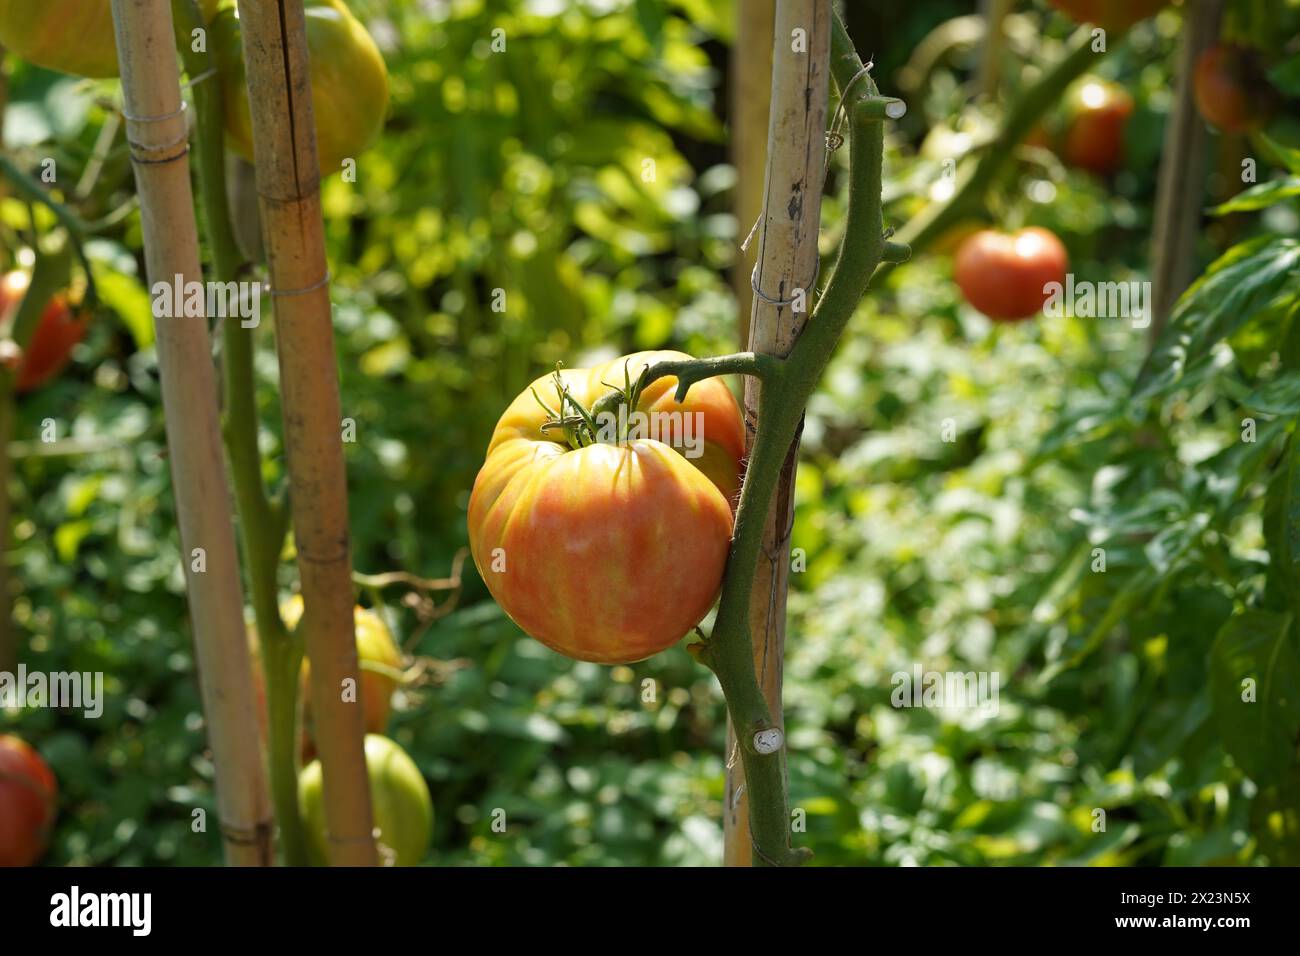 Grosse chair orange de tomate beefsteak poussant sur une tige. Sur le fond, il y a plus de plants de tomates avec des fruits. Banque D'Images